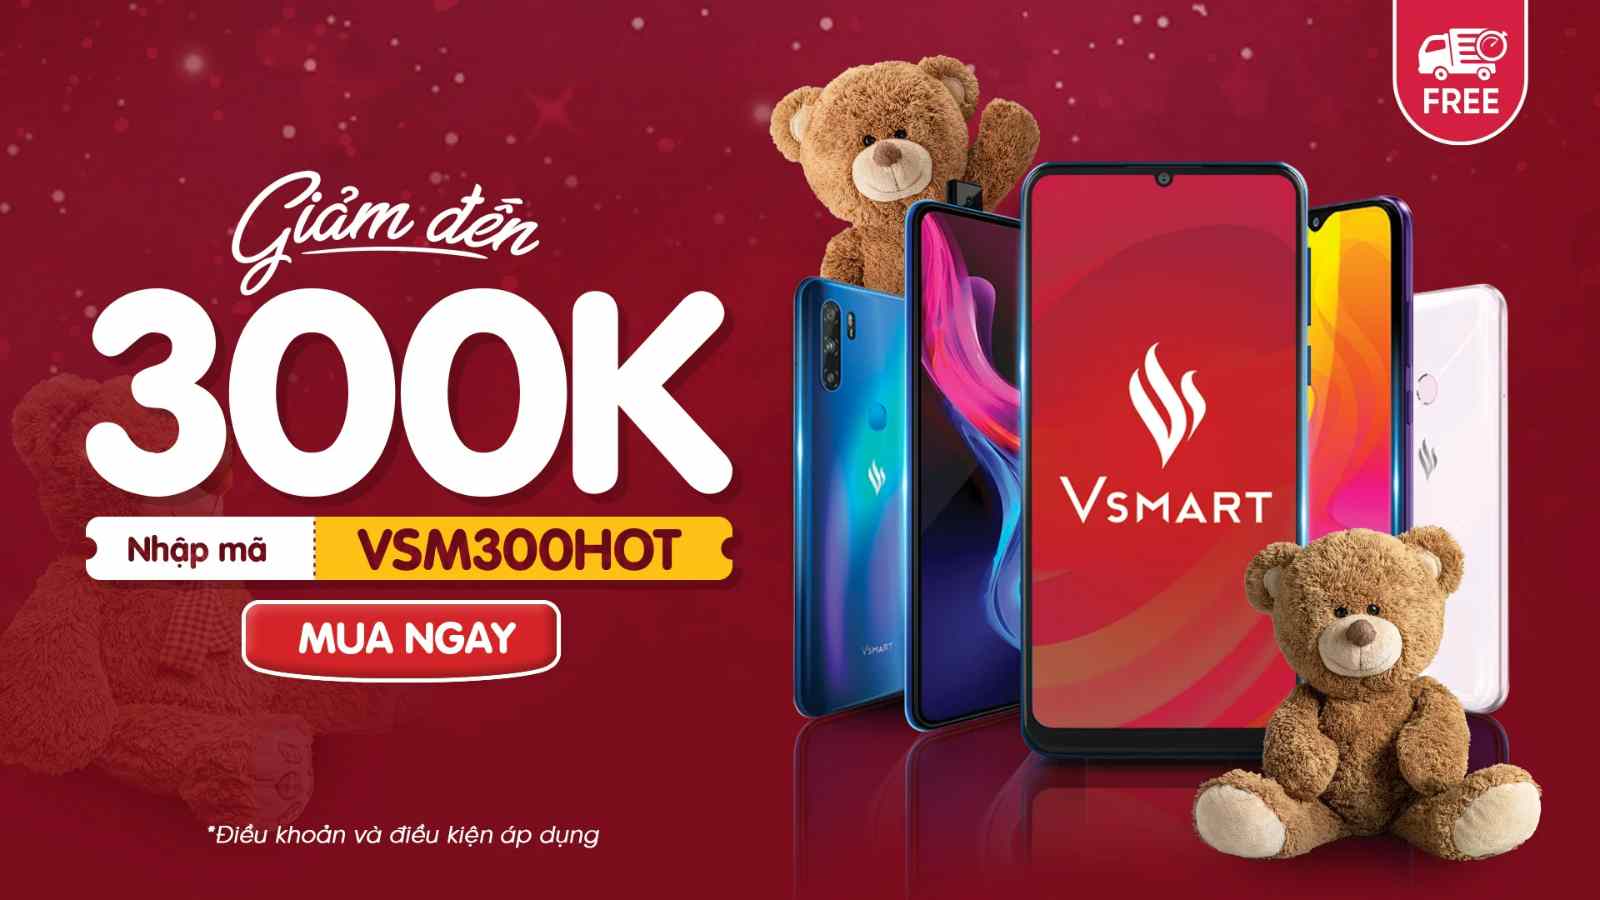 Thể lệ khuyến mãi khi mua điện thoại Vsmart trên app VinID tháng 10